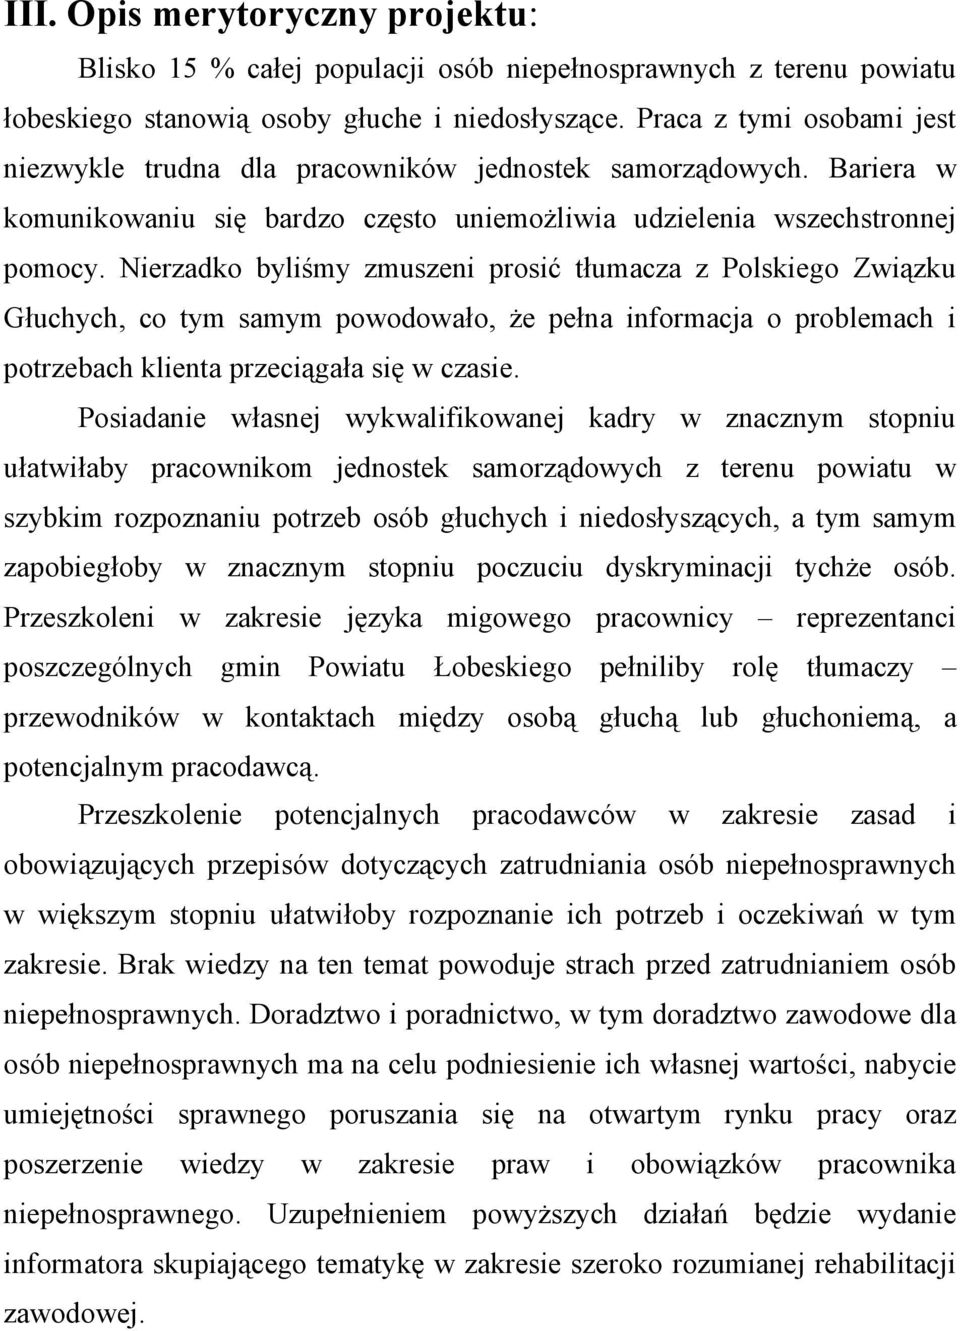 Nierzadko byliśmy zmuszeni prosić tłumacza z Polskiego Związku Głuchych, co tym samym powodowało, że pełna informacja o problemach i potrzebach klienta przeciągała się w czasie.